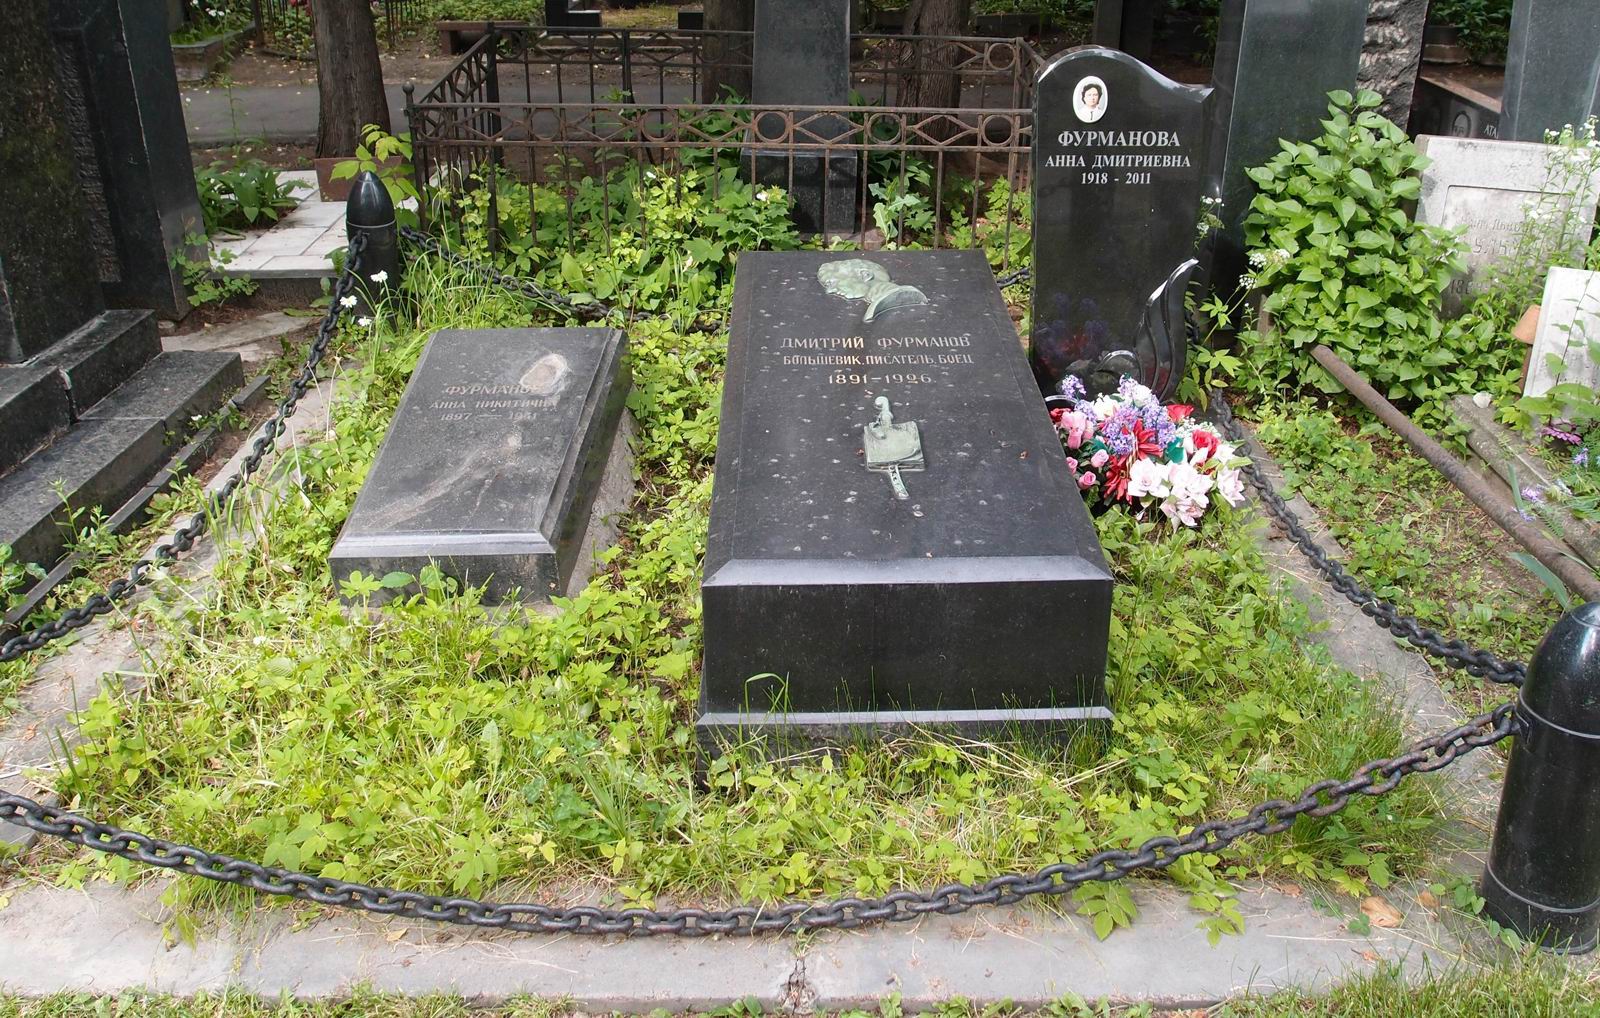 Памятник на могиле Фурманова Д.А. (1891–1926), ск. С.Мограчев, на Новодевичьем кладбище (1–44–38). Нажмите левую кнопку мыши, чтобы увидеть фрагмент памятника крупно.